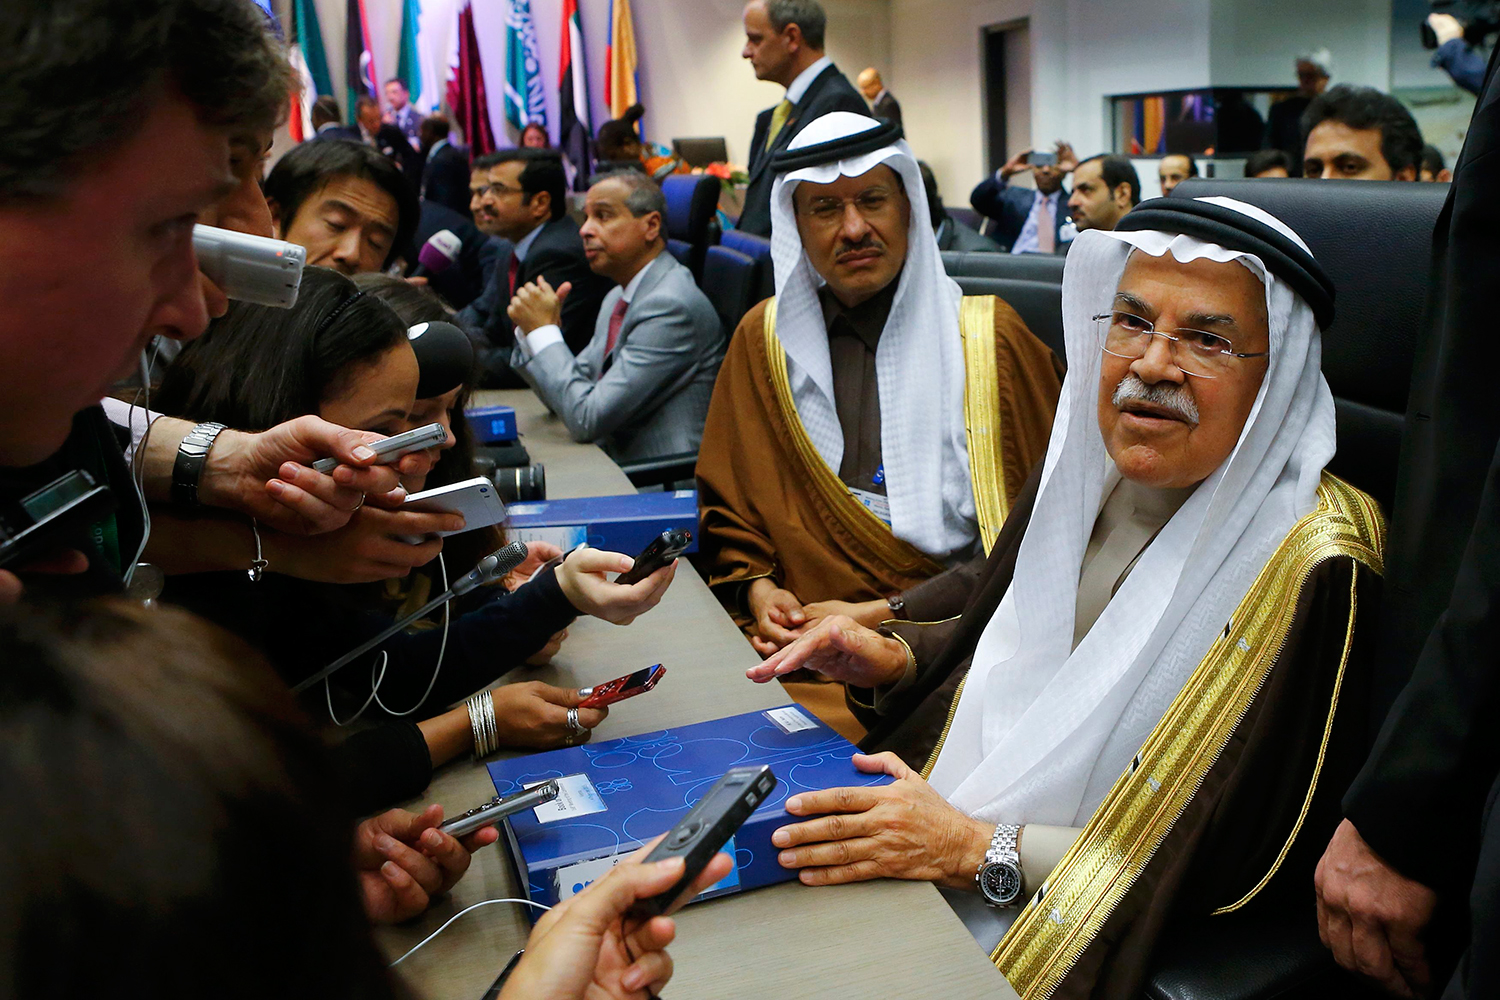 Fracasa la reunión de la OPEP y el petróleo se desploma